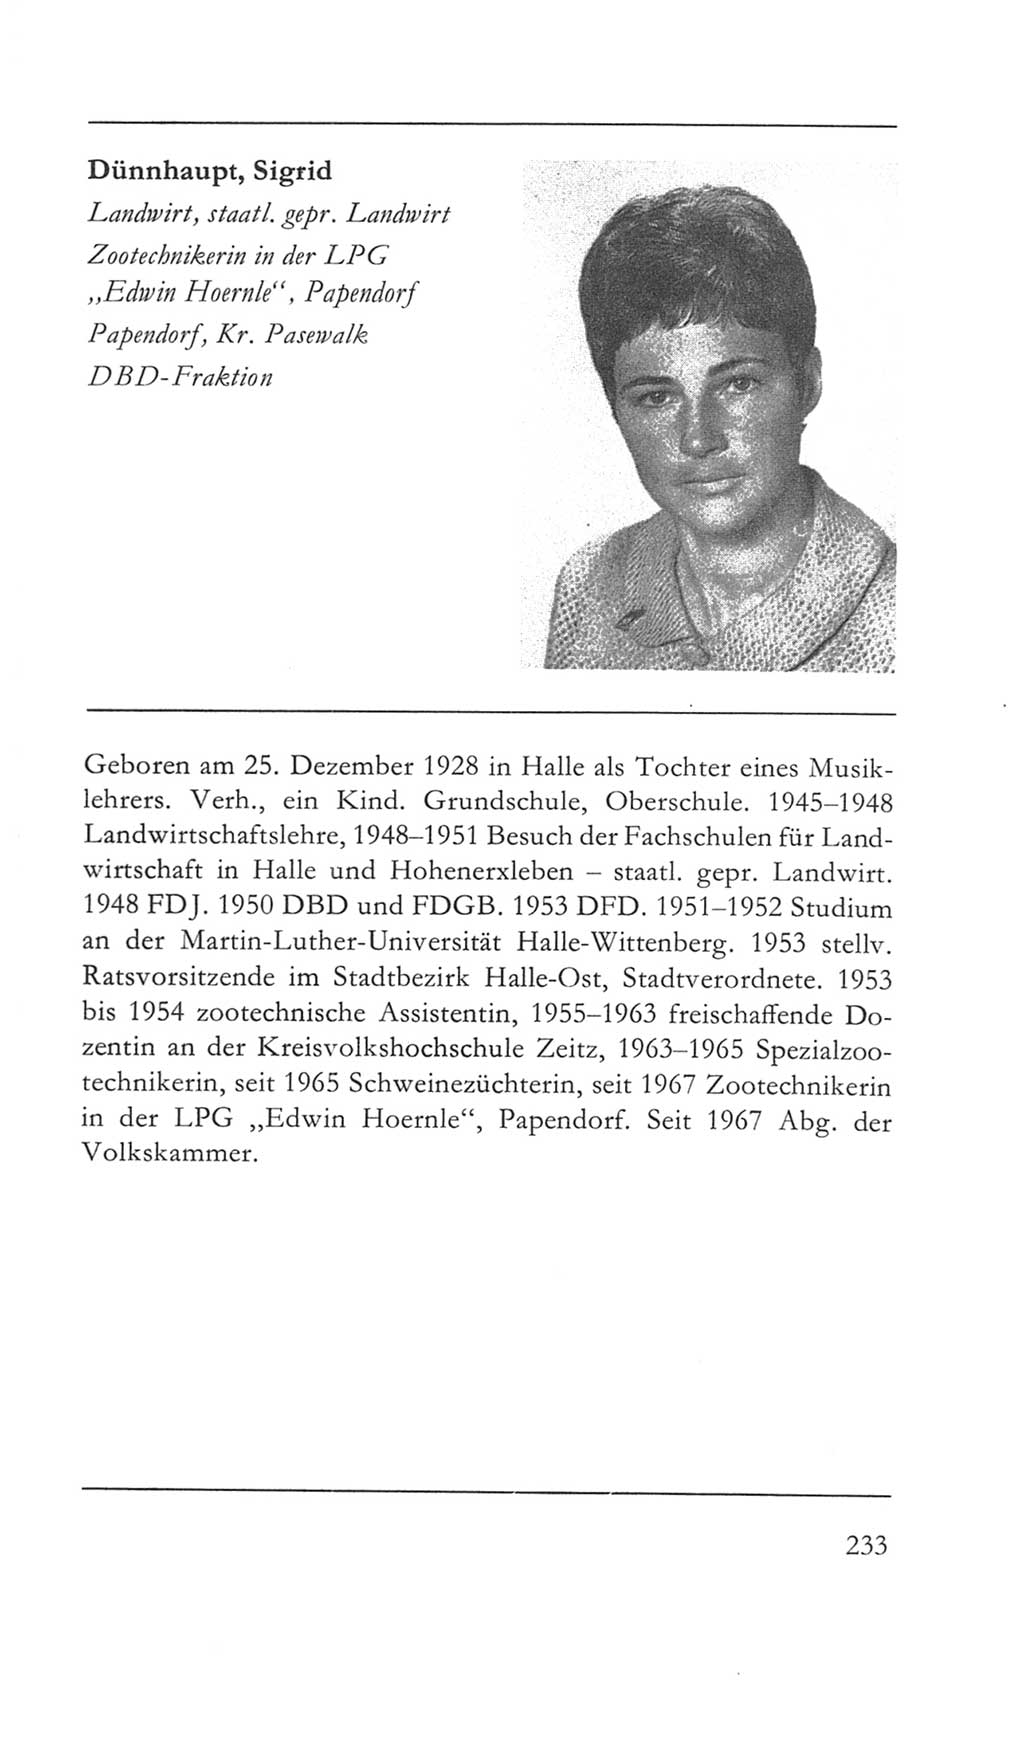 Volkskammer (VK) der Deutschen Demokratischen Republik (DDR) 5. Wahlperiode 1967-1971, Seite 233 (VK. DDR 5. WP. 1967-1971, S. 233)